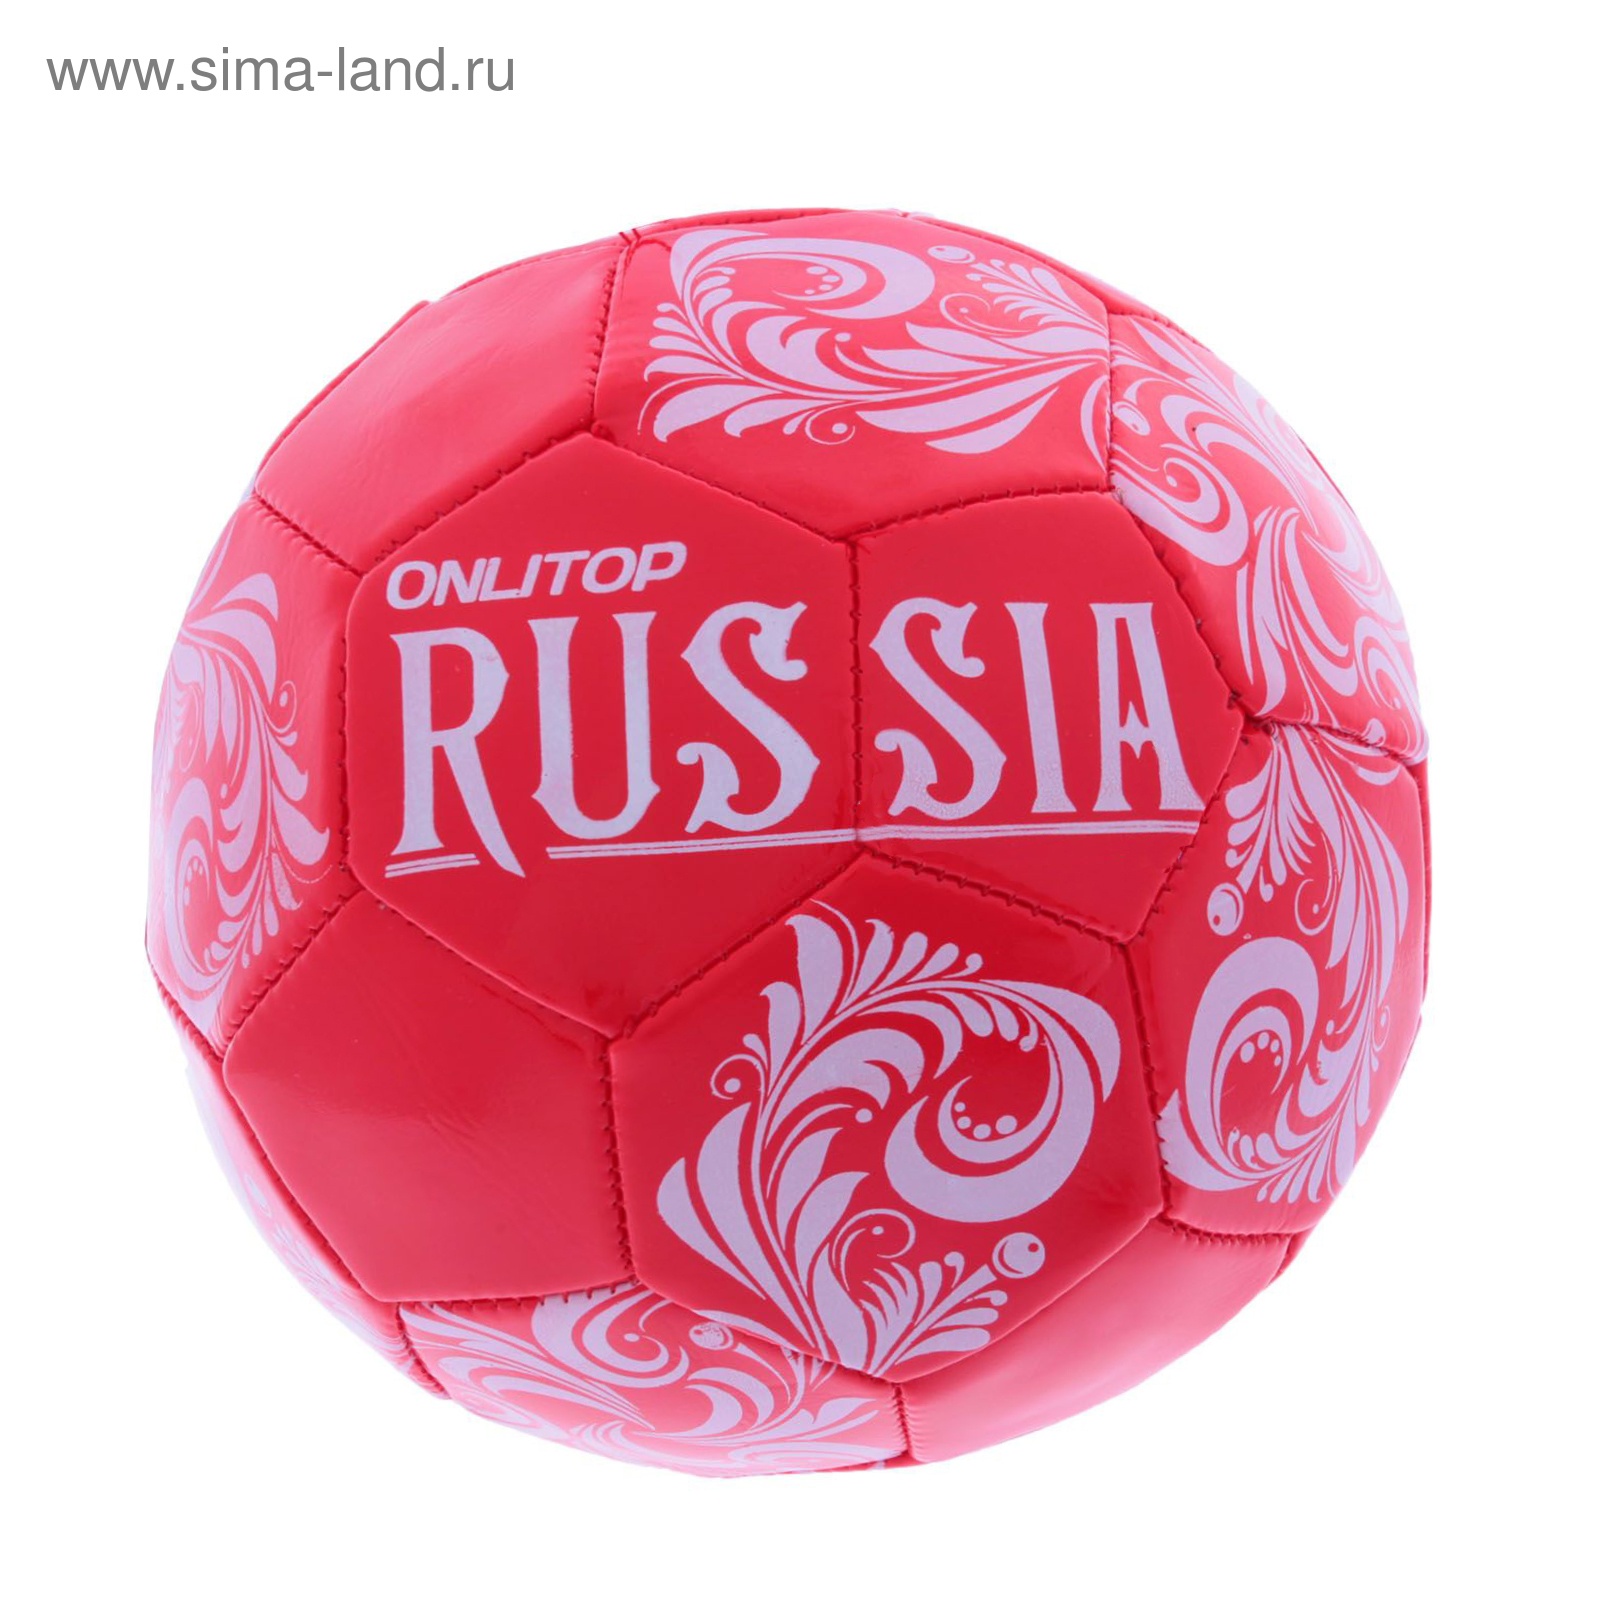 Мяч футбольный Russia, 32 панели, PVC, 2 подслоя, машинная сшивка, размер 5